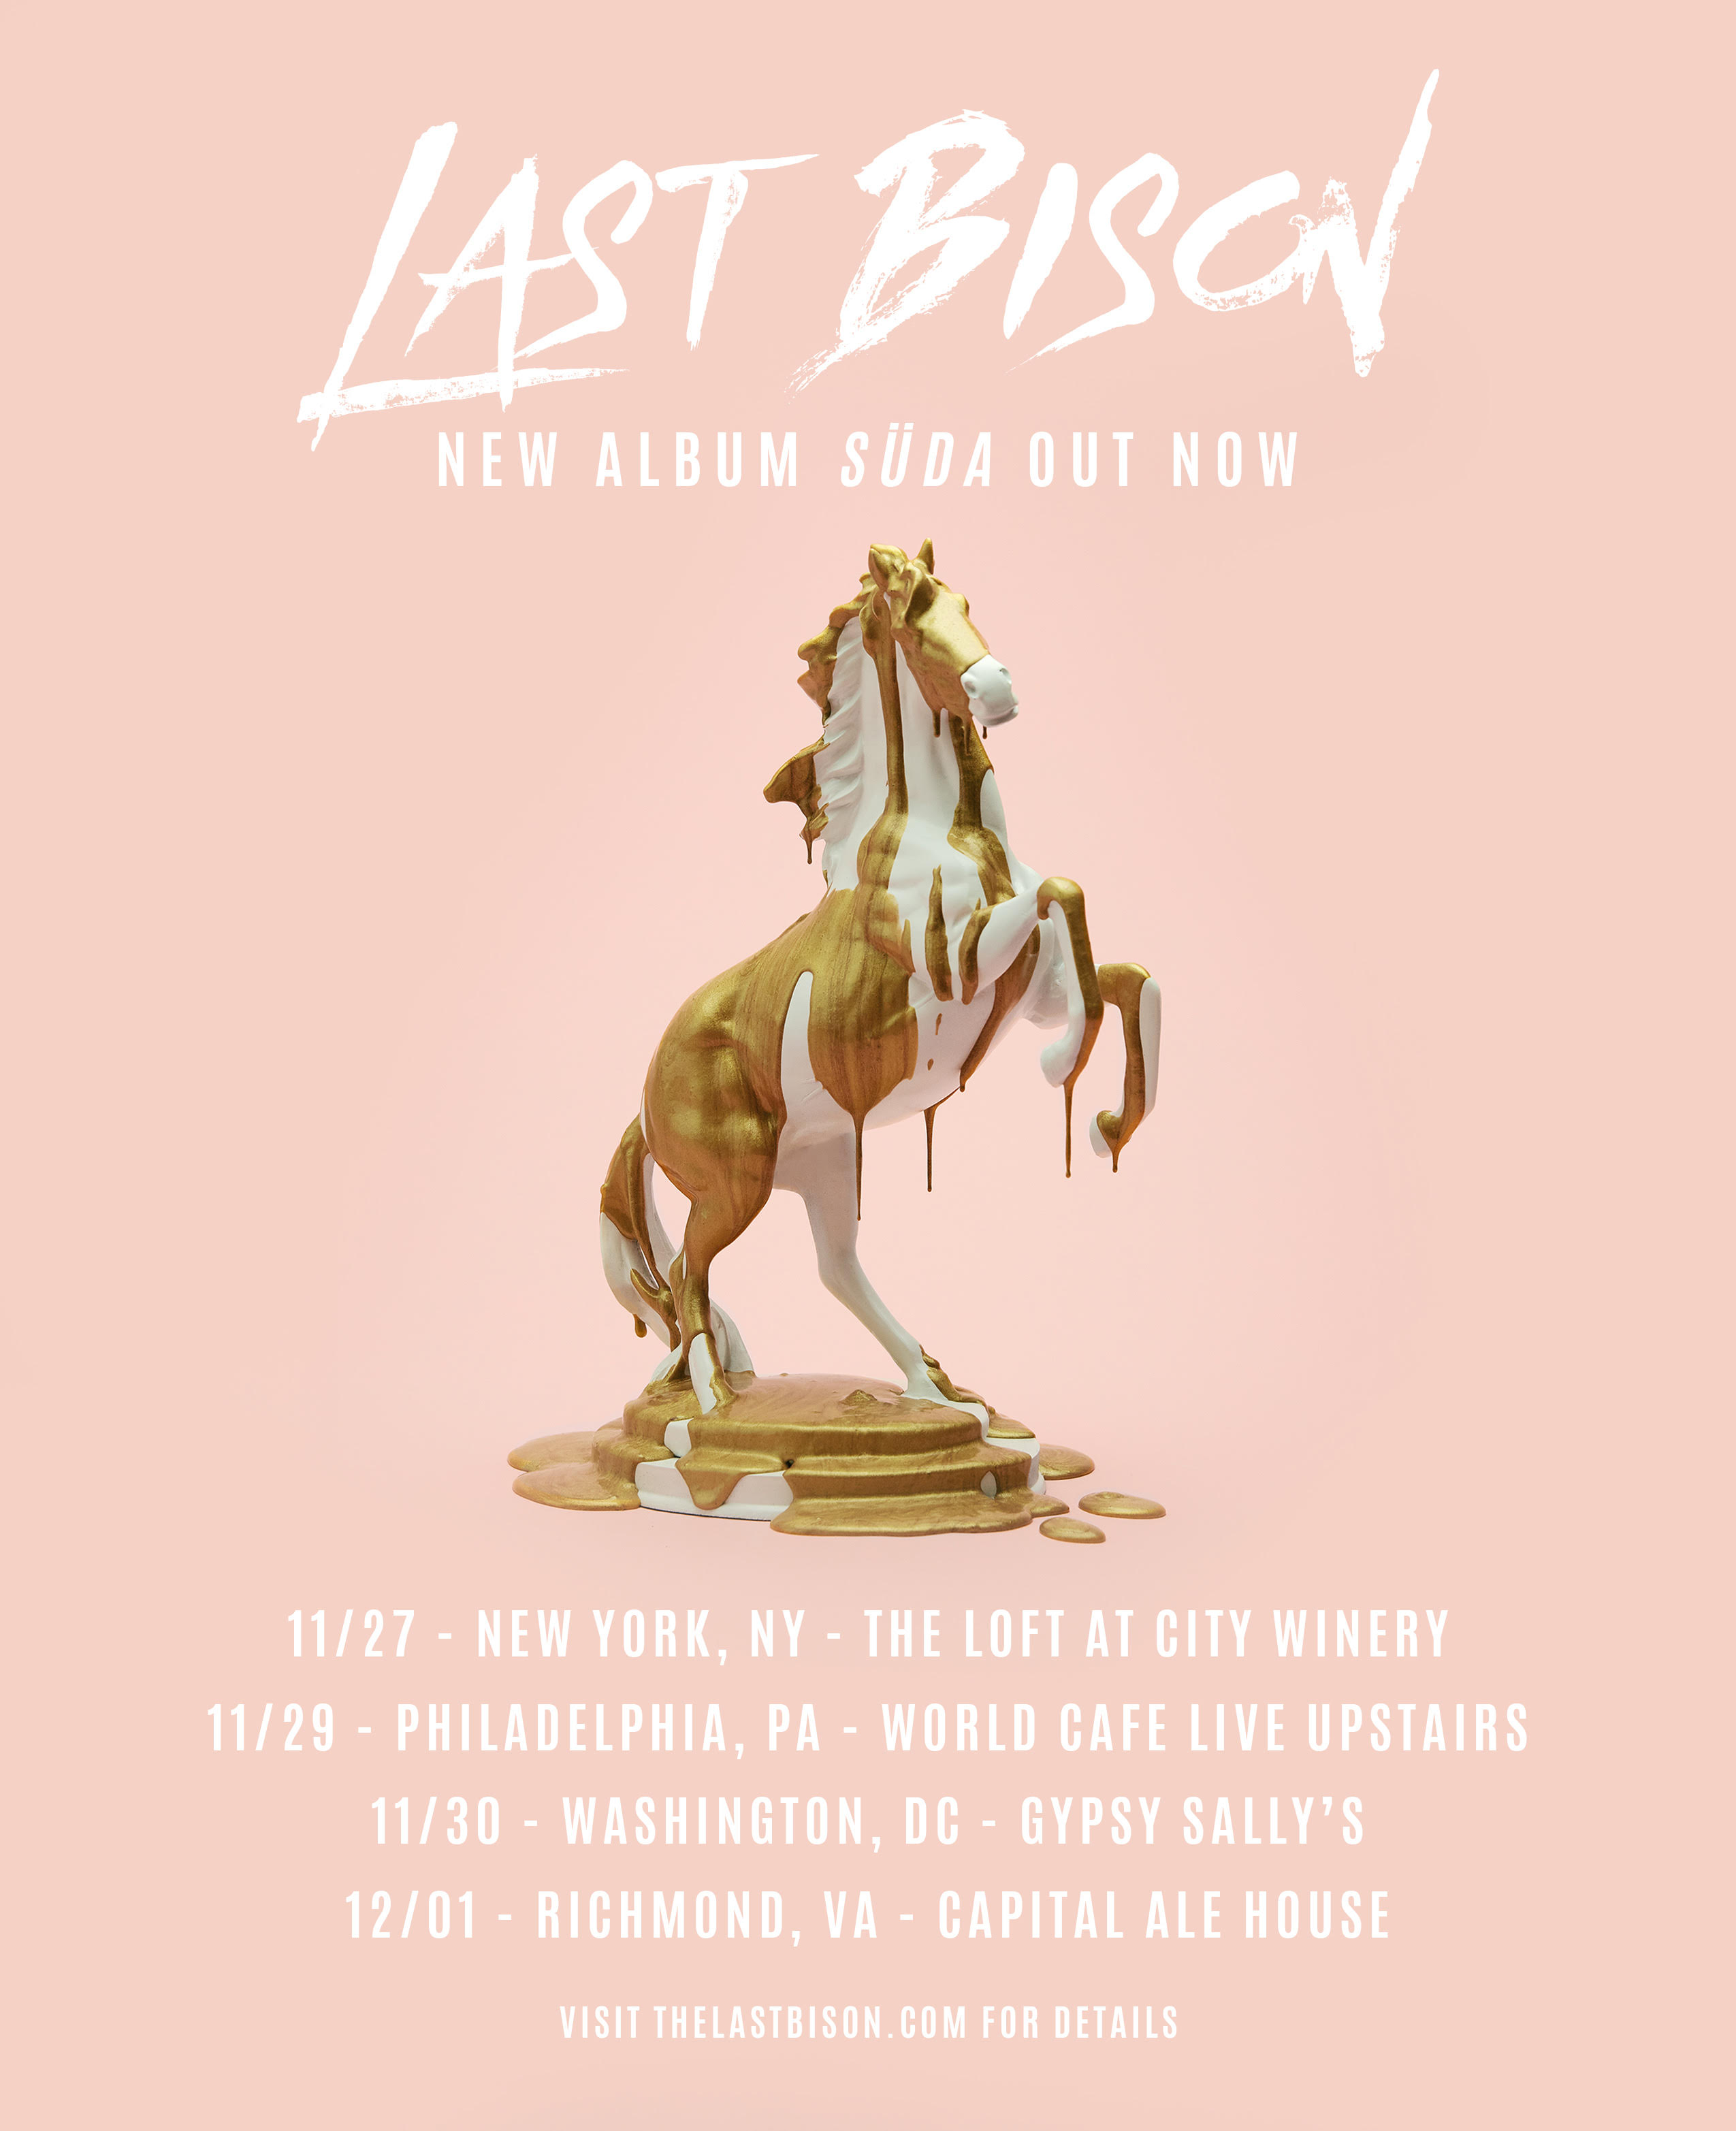 The Last Bison 2018 Tour Flyer